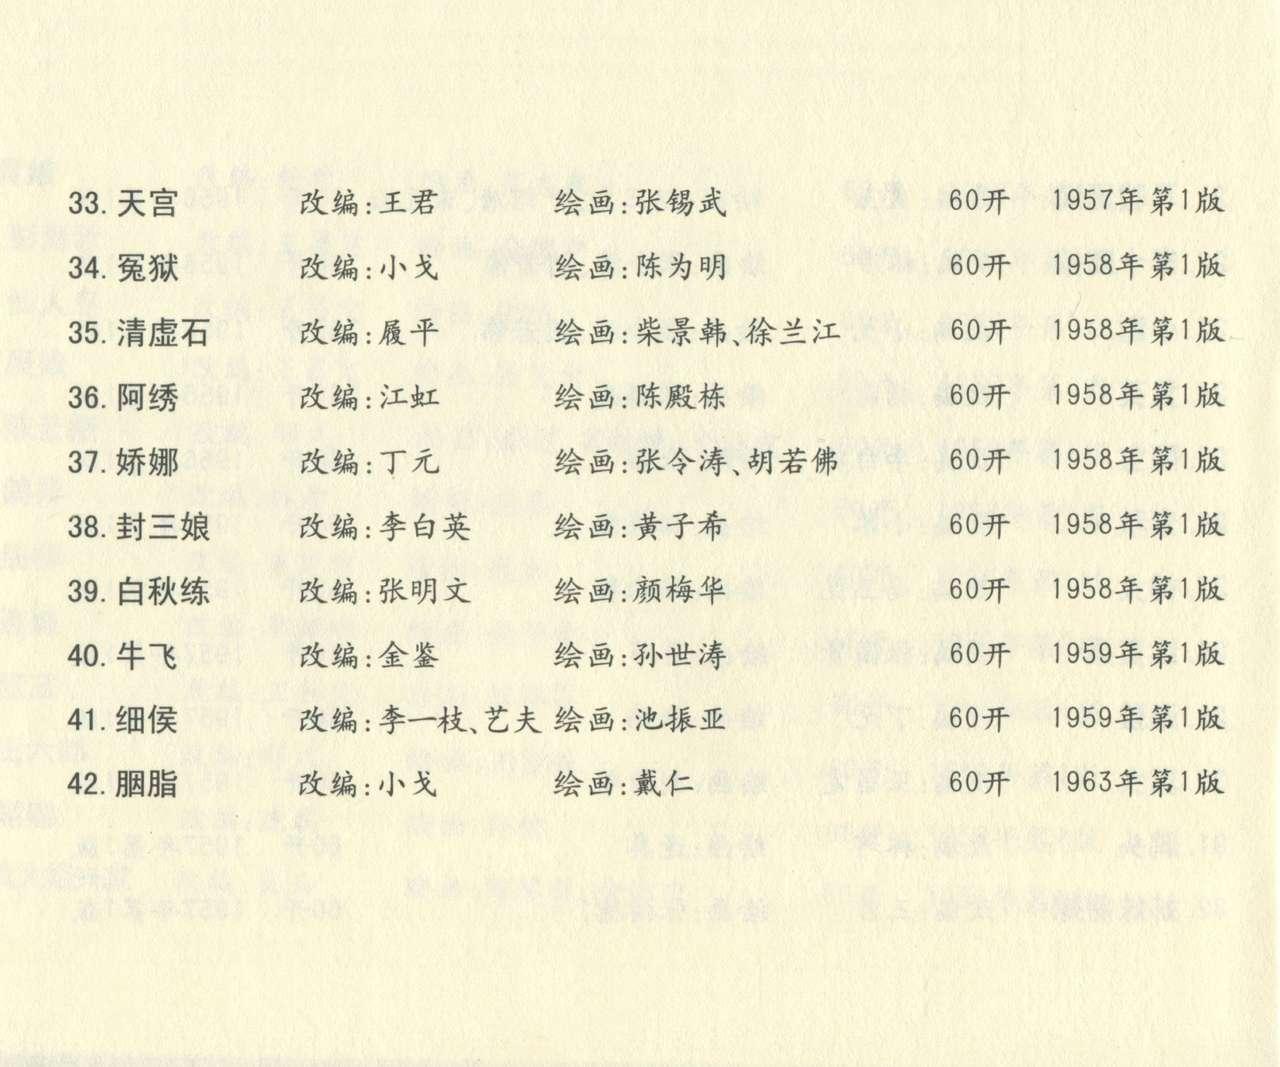 聊斋志异 张玮等绘 天津人民美术出版社 卷二十一 ~ 三十 680